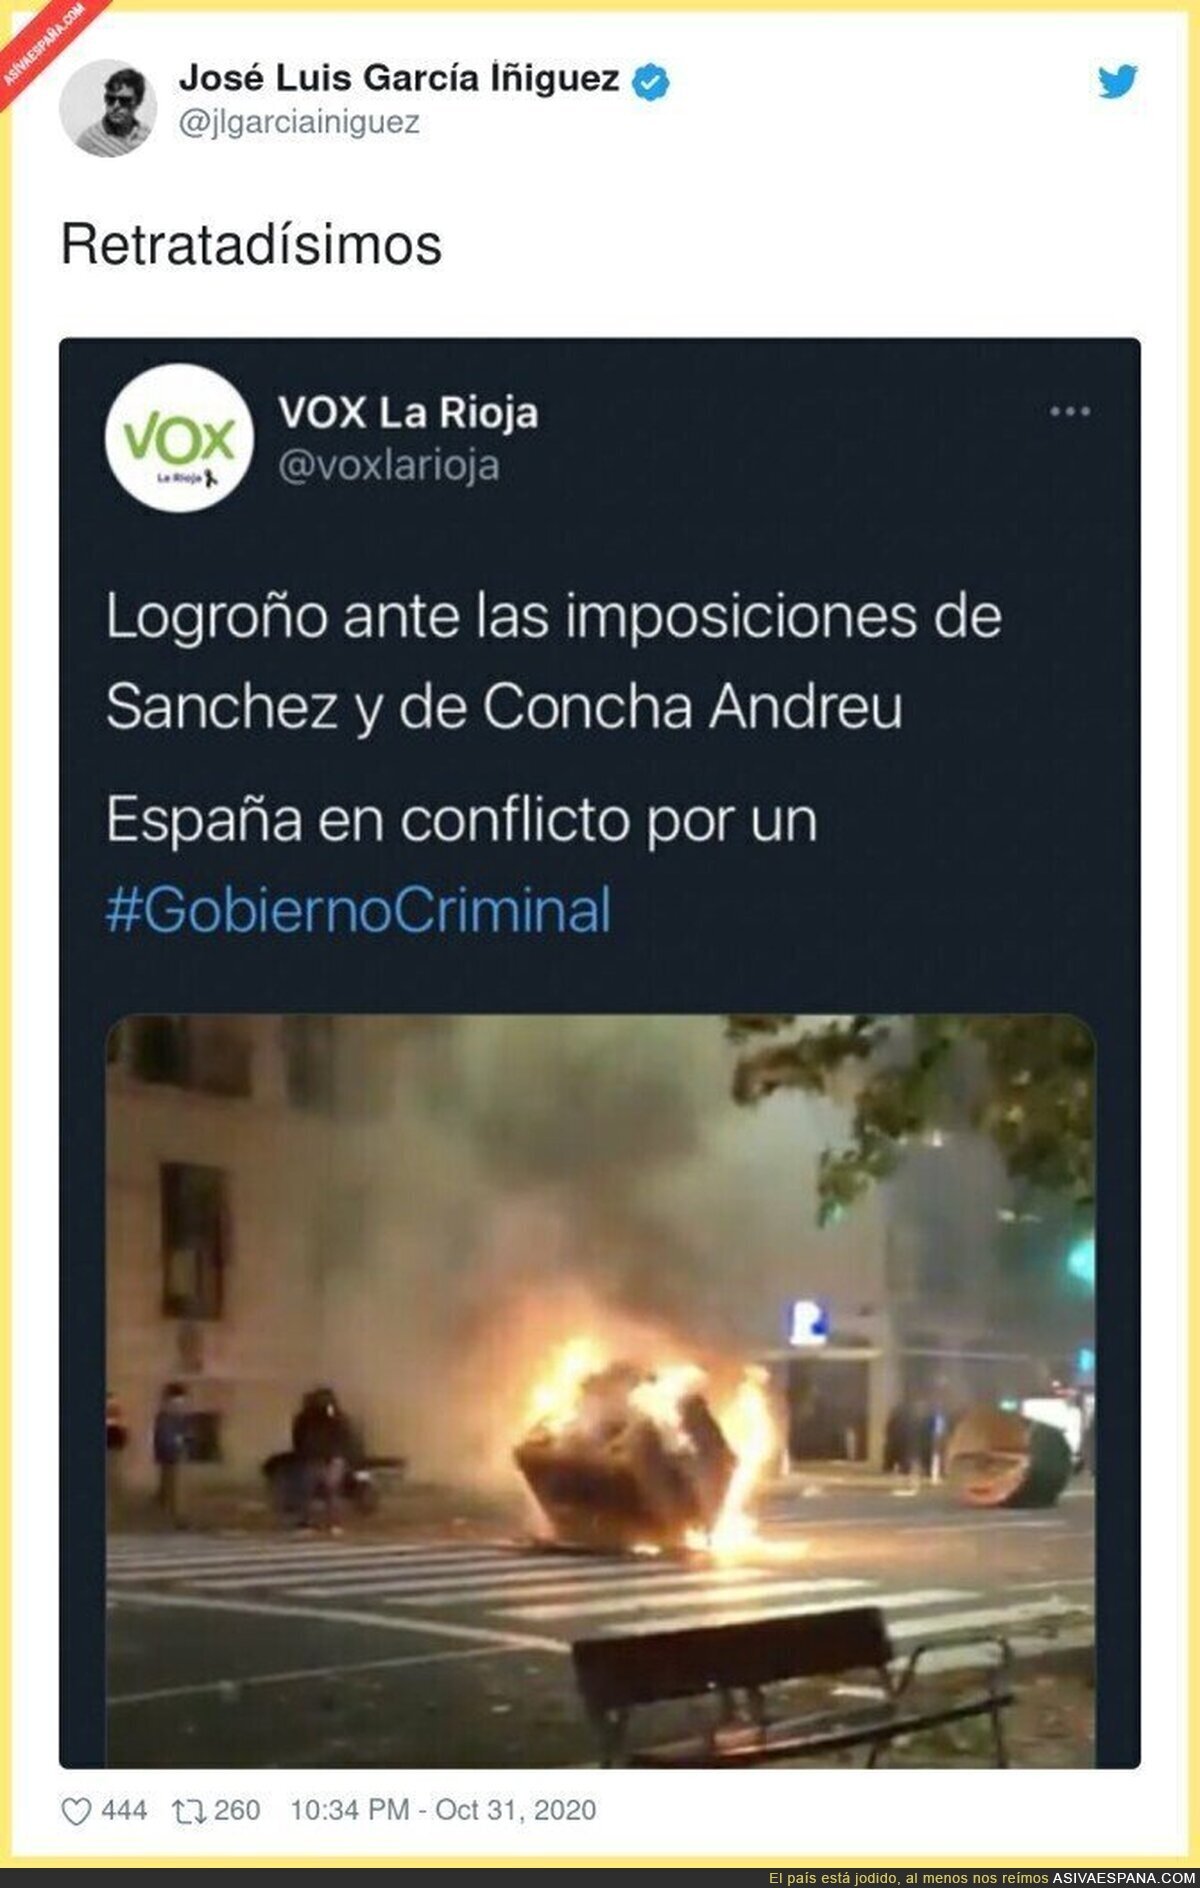 VOX queda retratada apoyando las manifestaciones violentas en las calles contra el Gobierno